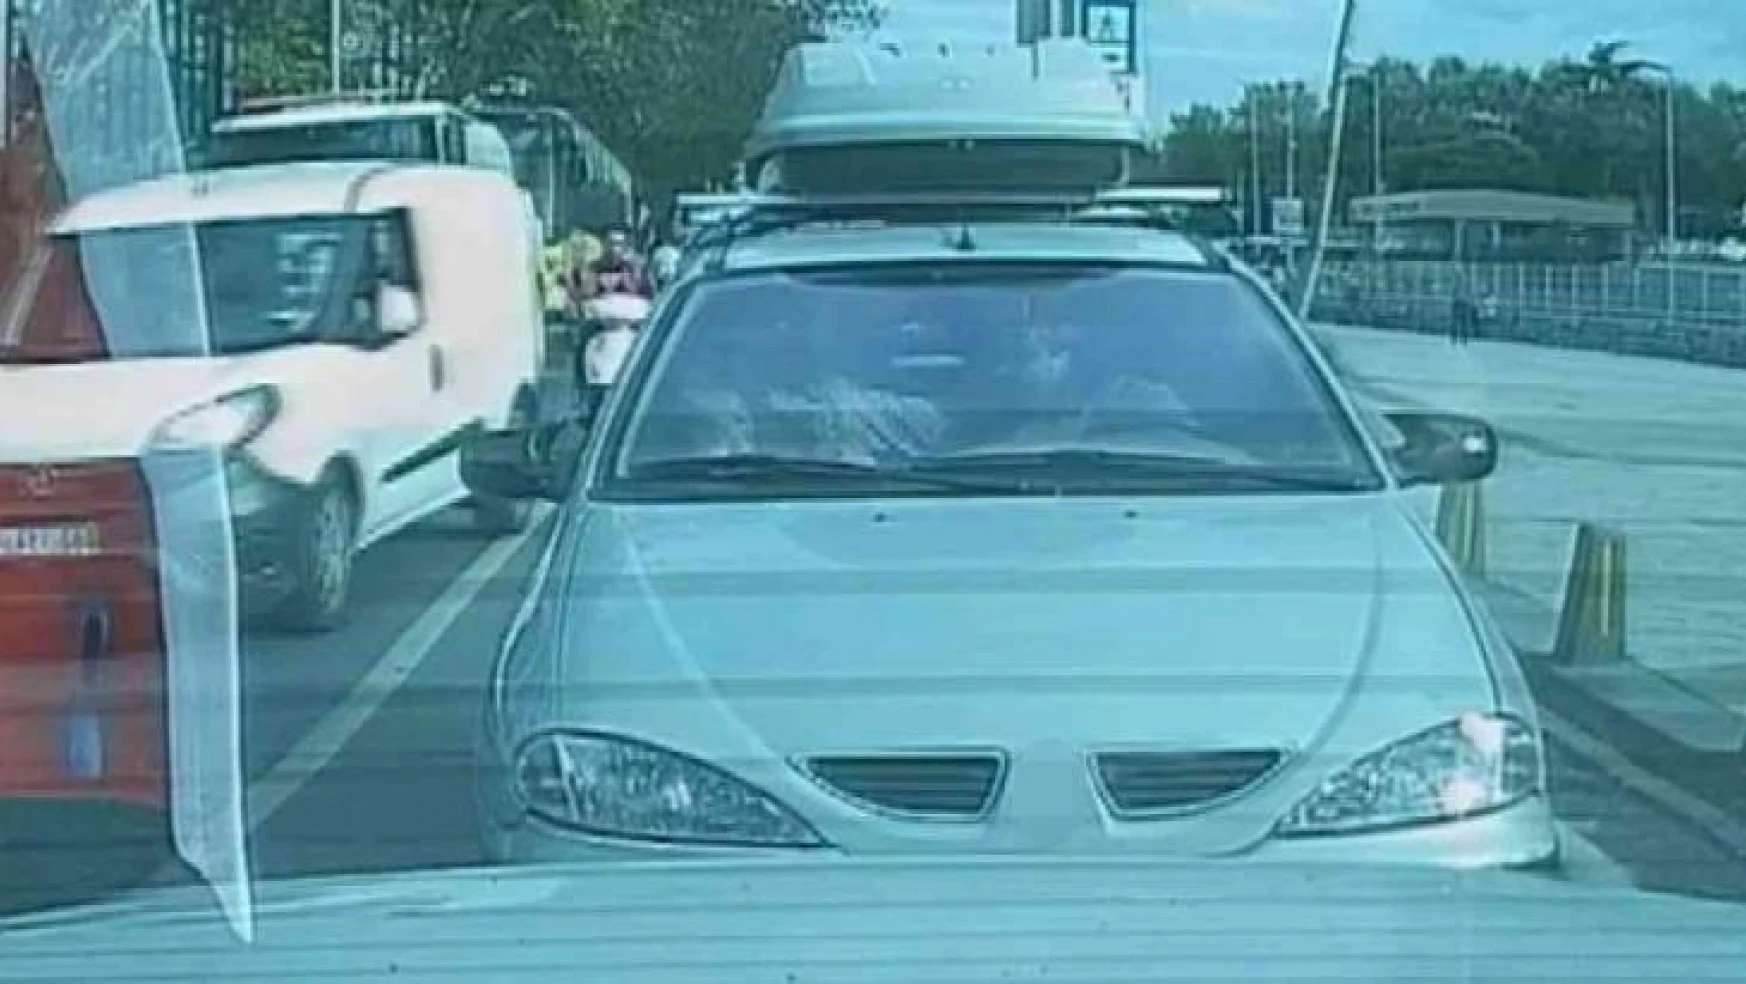 Kağıthane'de, otomobil içerisinde kadına şiddet kamerada